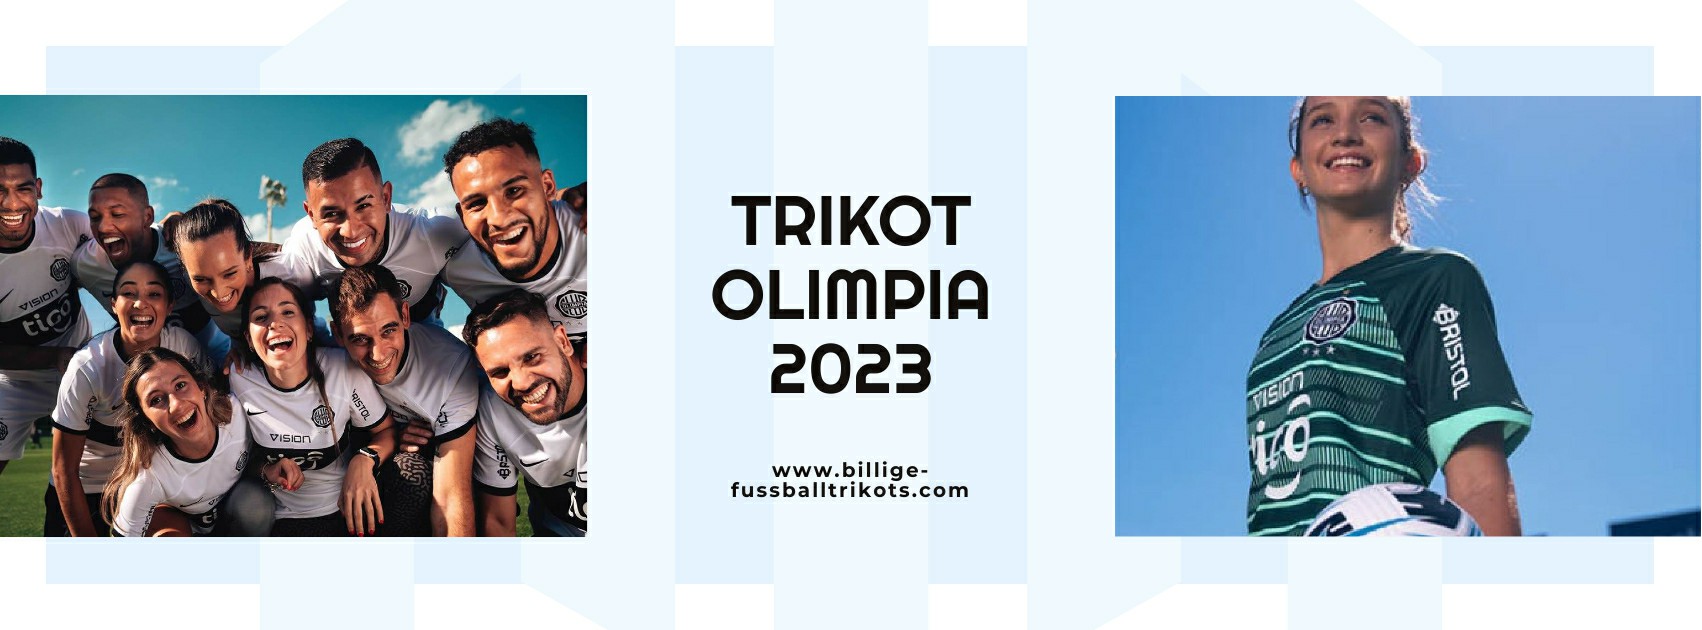 Olimpia Trikot 2023-2024